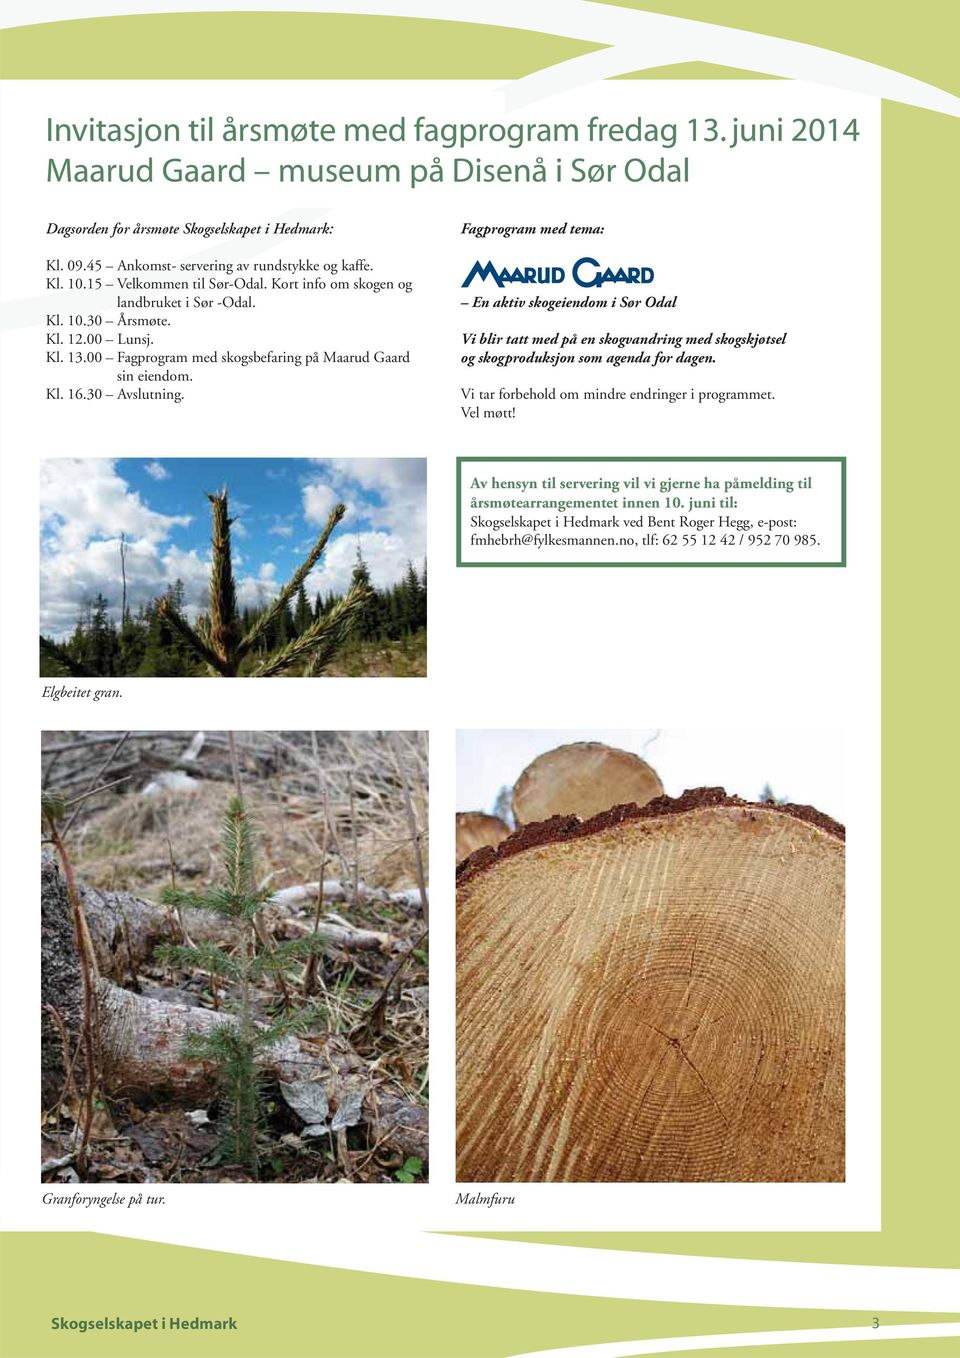 30 Avslutning. Fagprogram med tema: En aktiv skogeiendom i Sør Odal Vi blir tatt med på en skogvandring med skogskjøtsel og skogproduksjon som agenda for dagen.